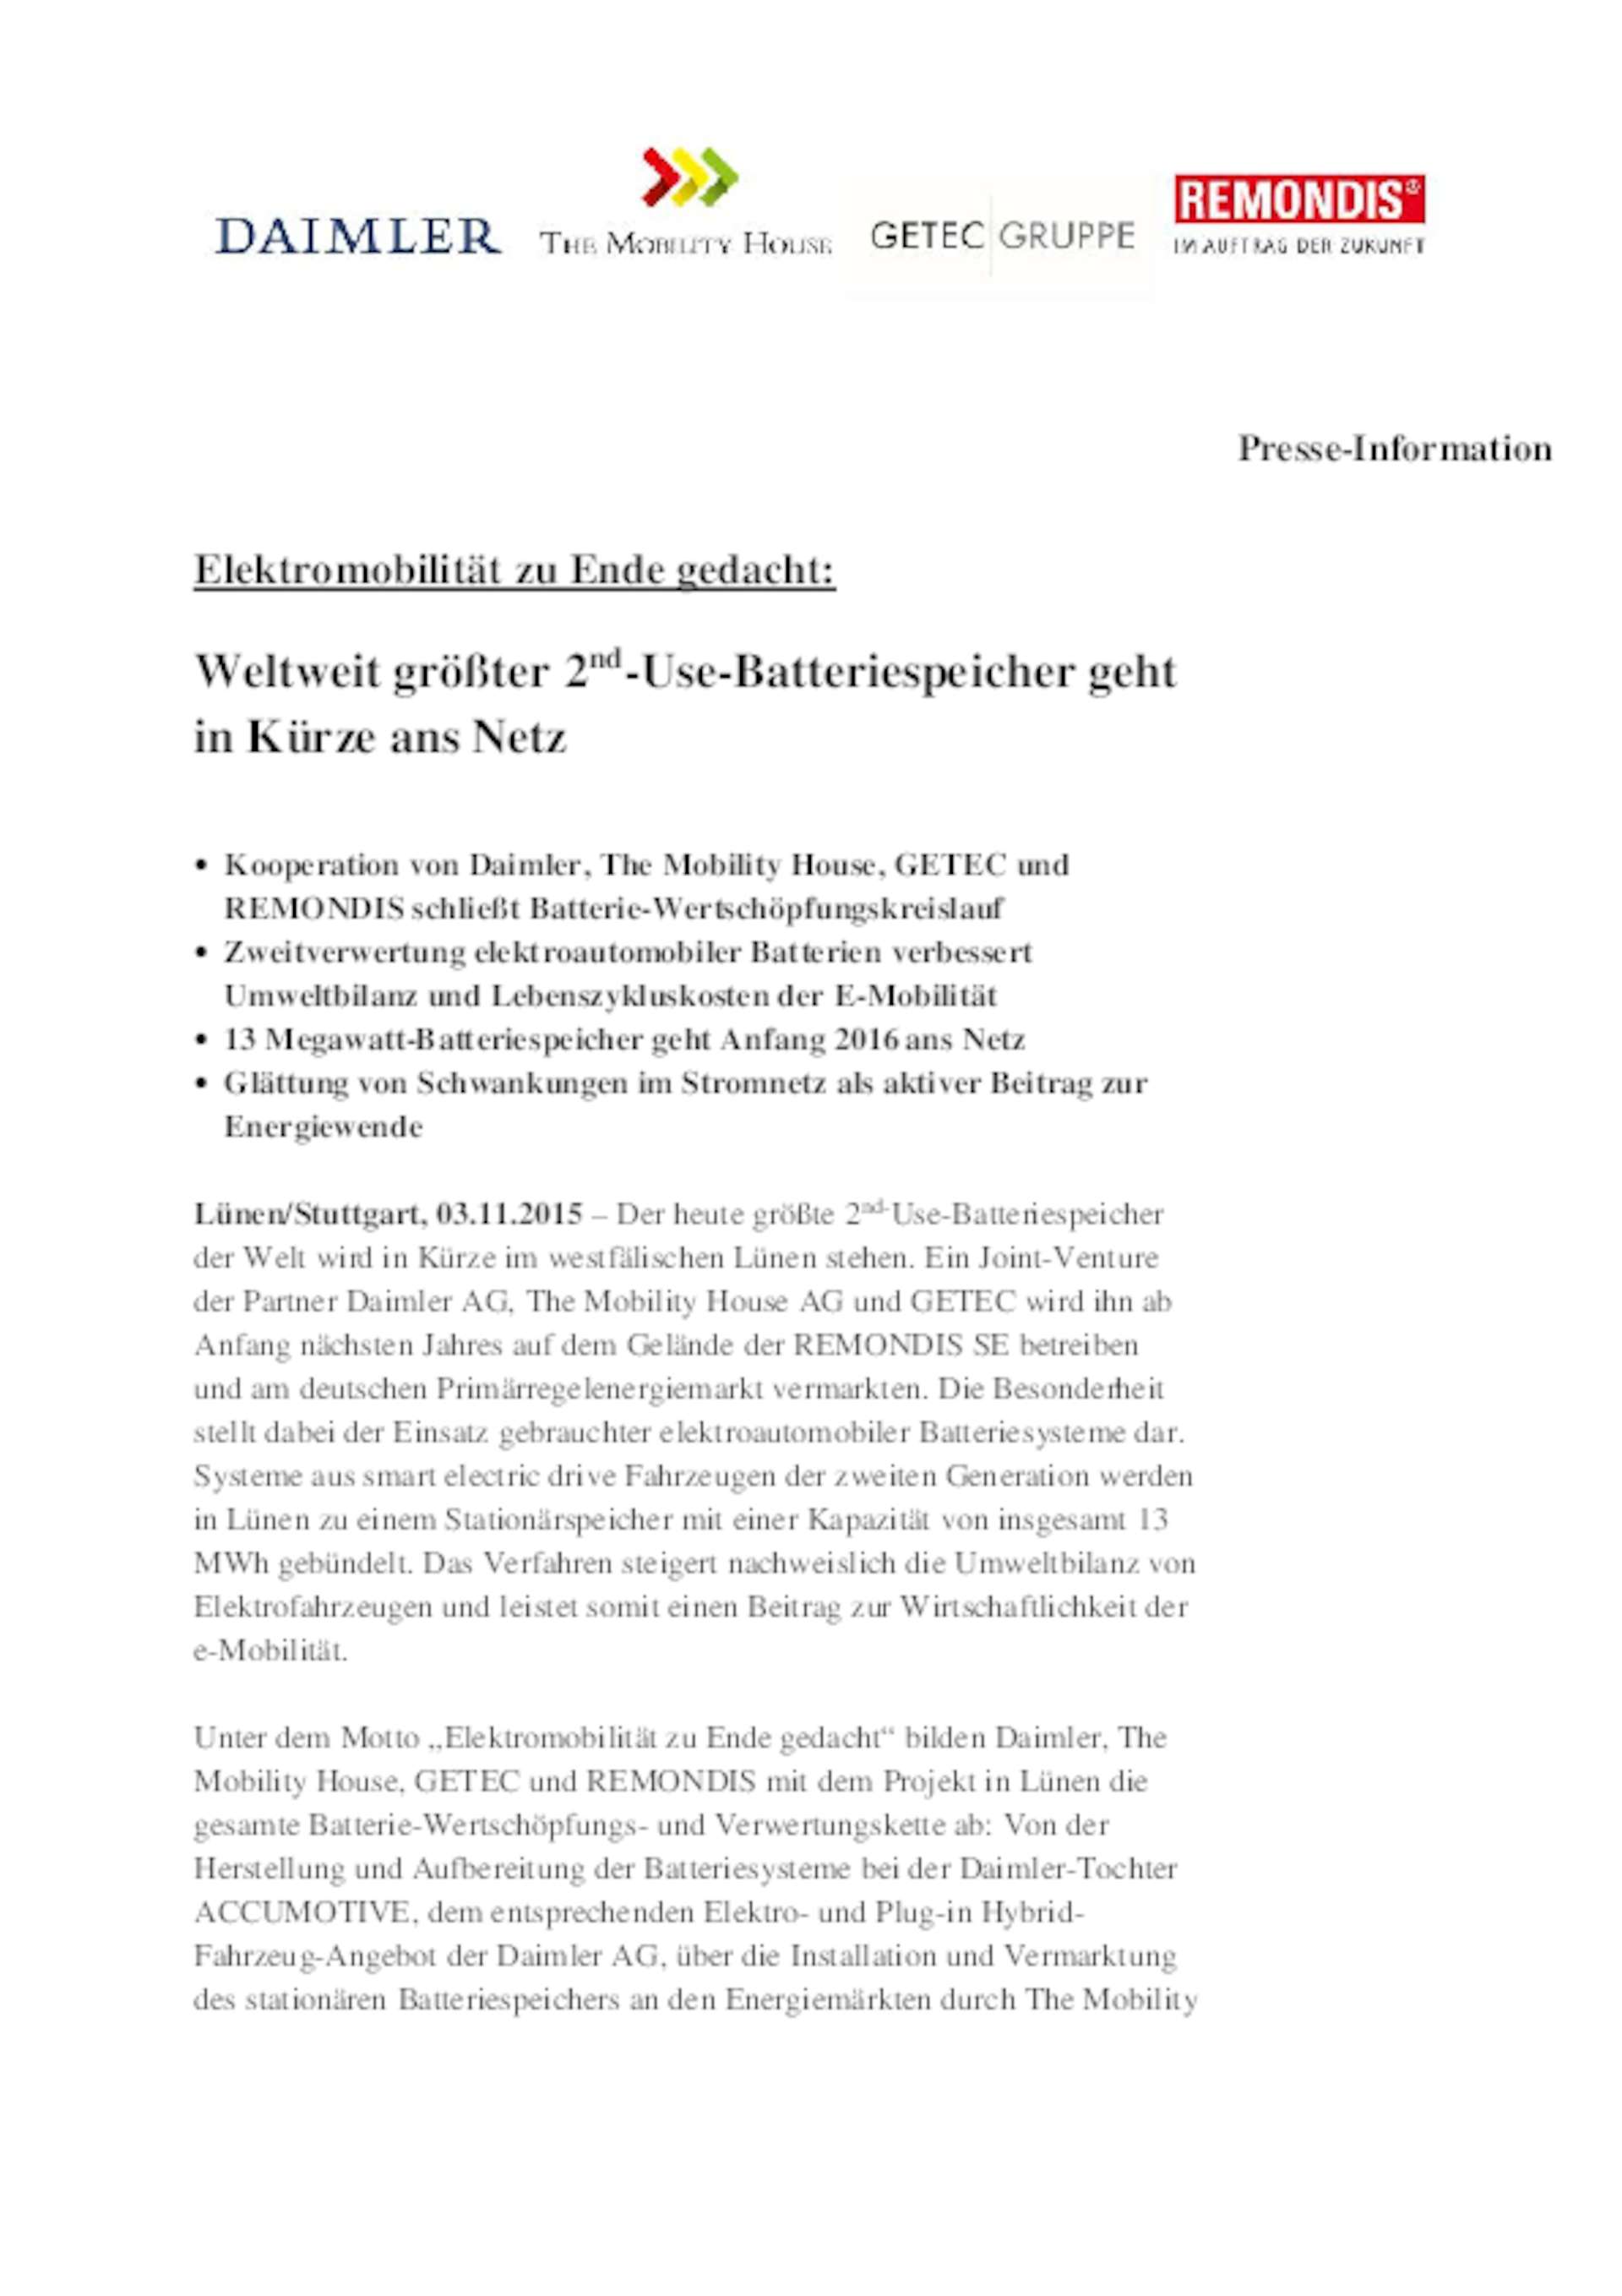 Gemeinsame Presseinformation GETEC, Daimler, REMONDIS und TMH